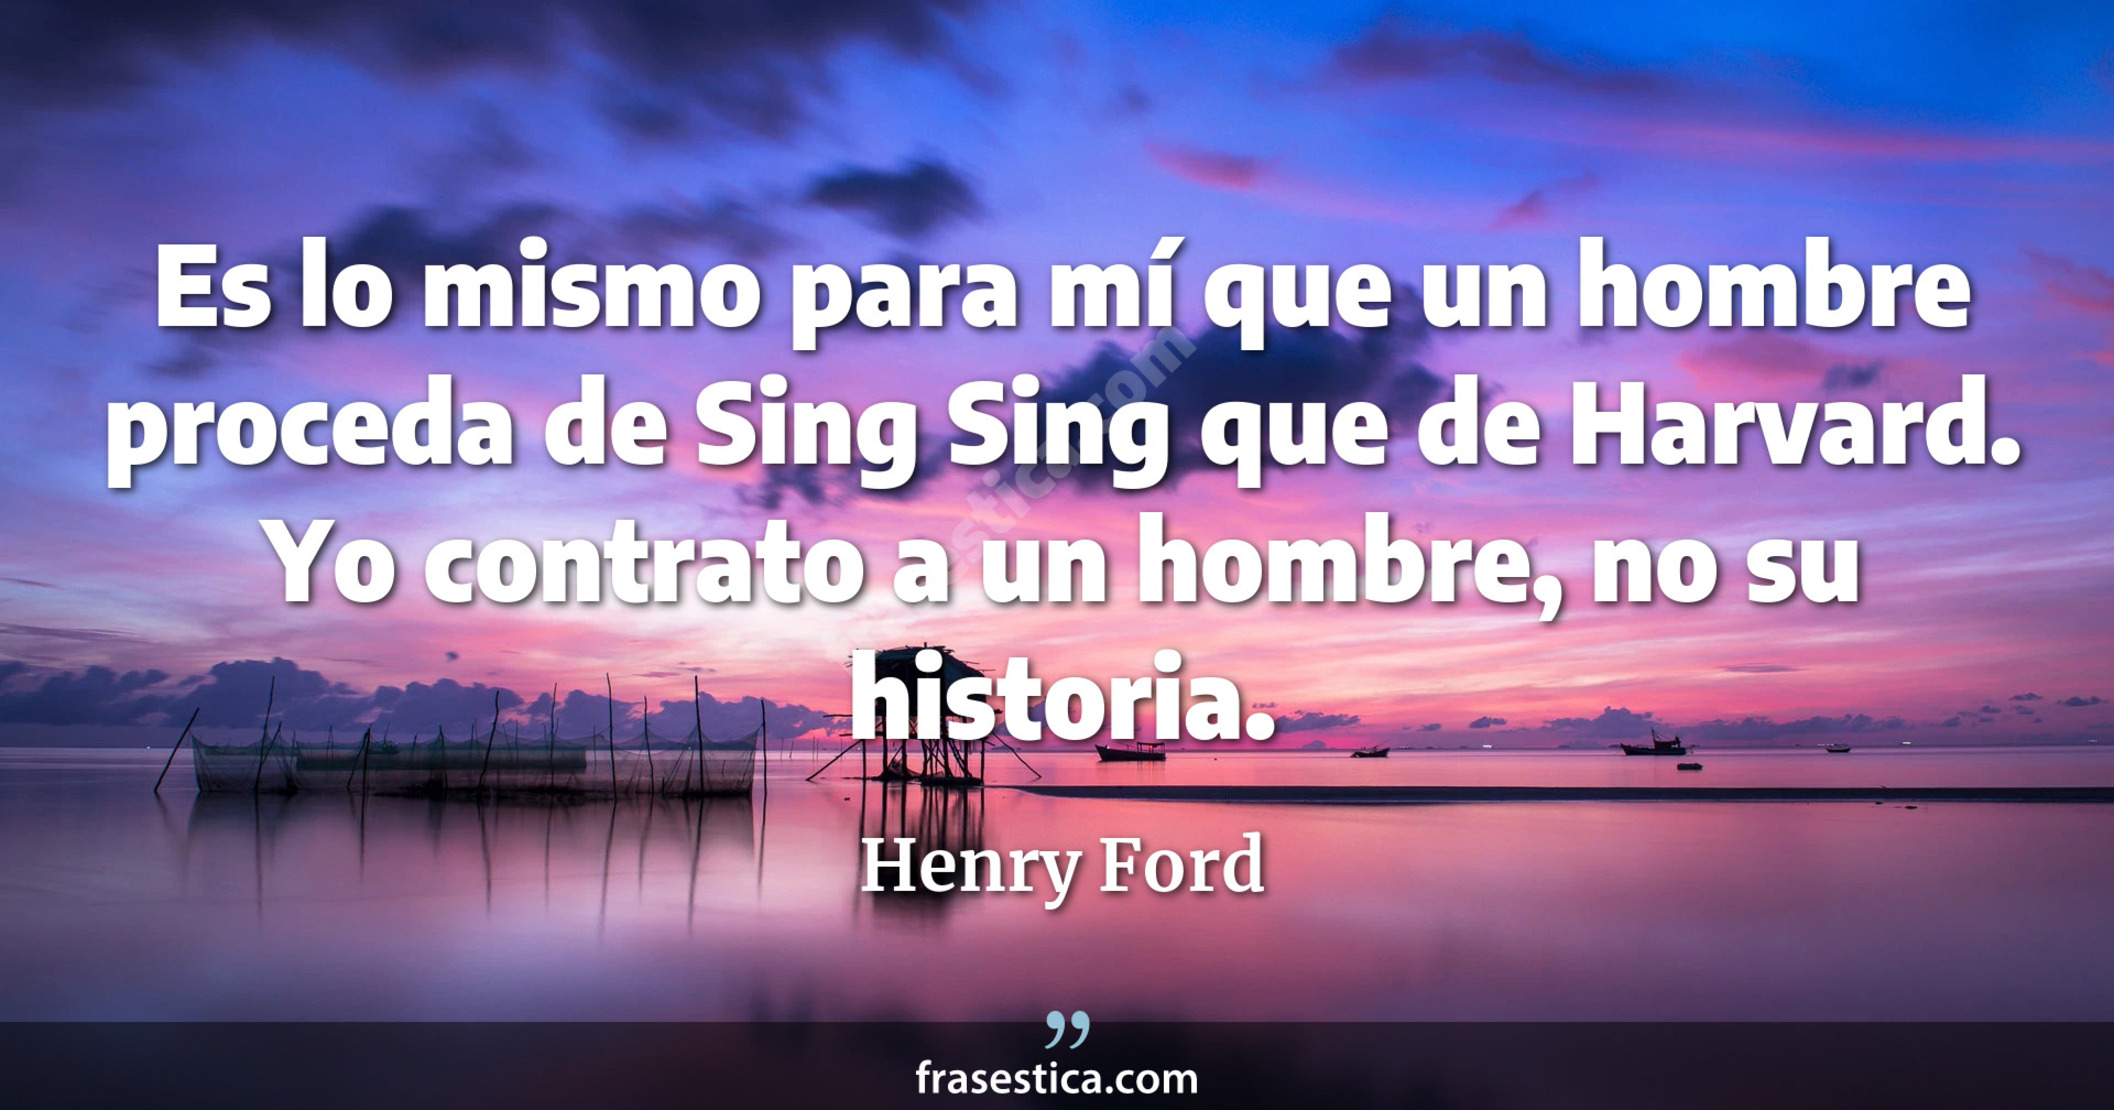 Es lo mismo para mí que un hombre proceda de Sing Sing que de Harvard. Yo contrato a un hombre, no su historia. - Henry Ford